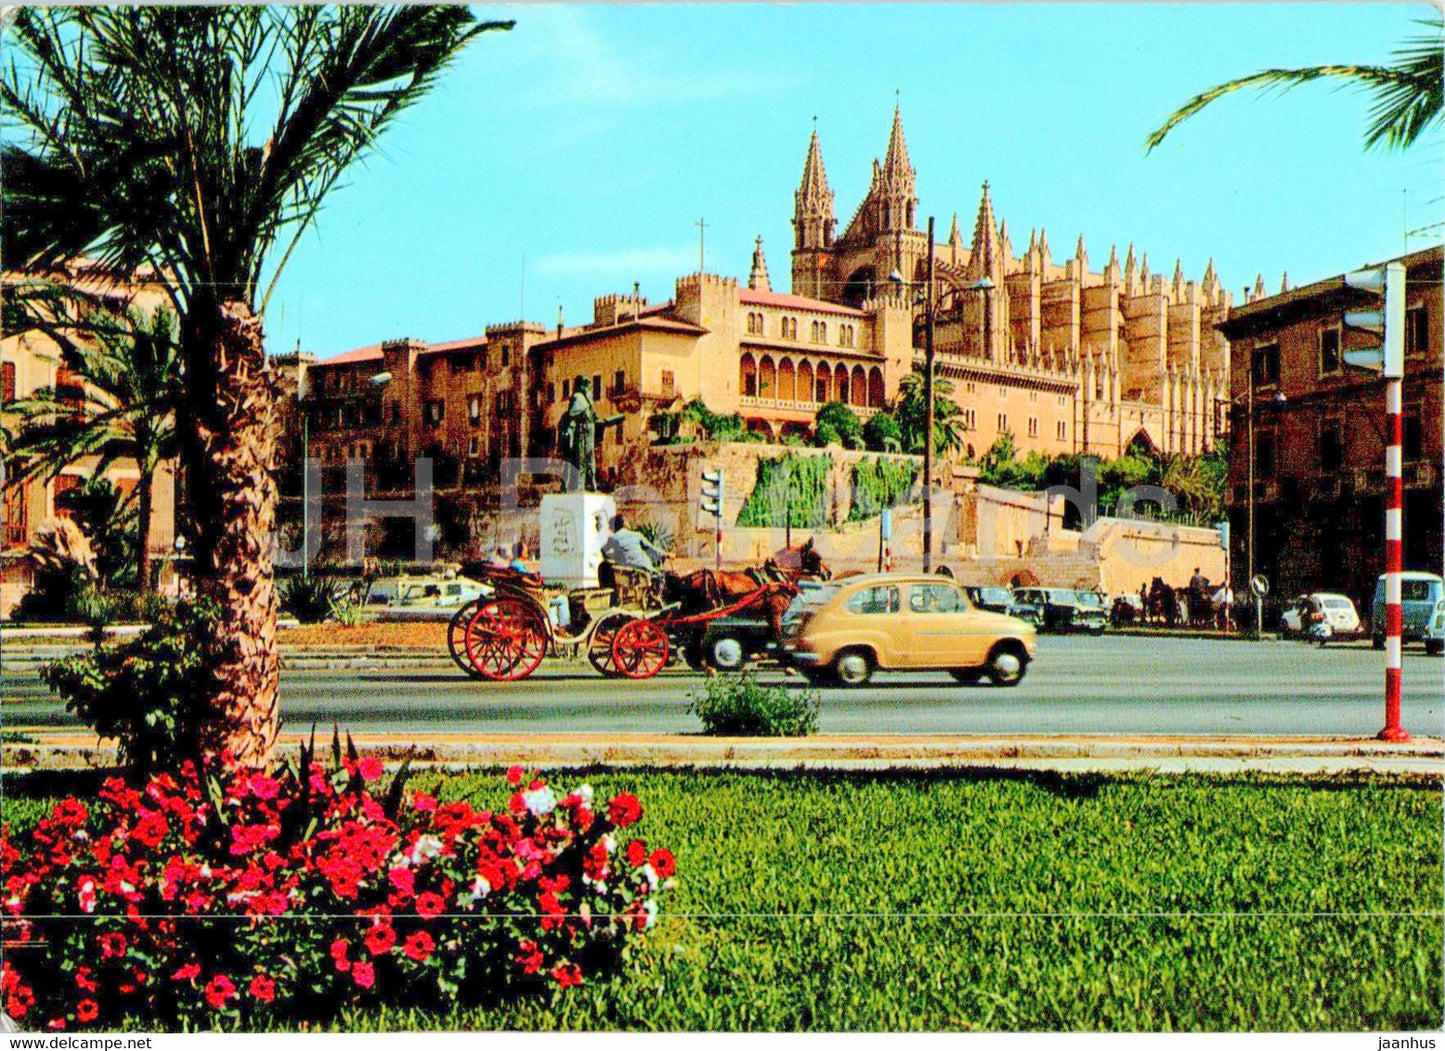 Palma de Mallorca - Catedral y Palacio de la Almudaina - car - cathedral - 1977 - Spain - used - JH Postcards